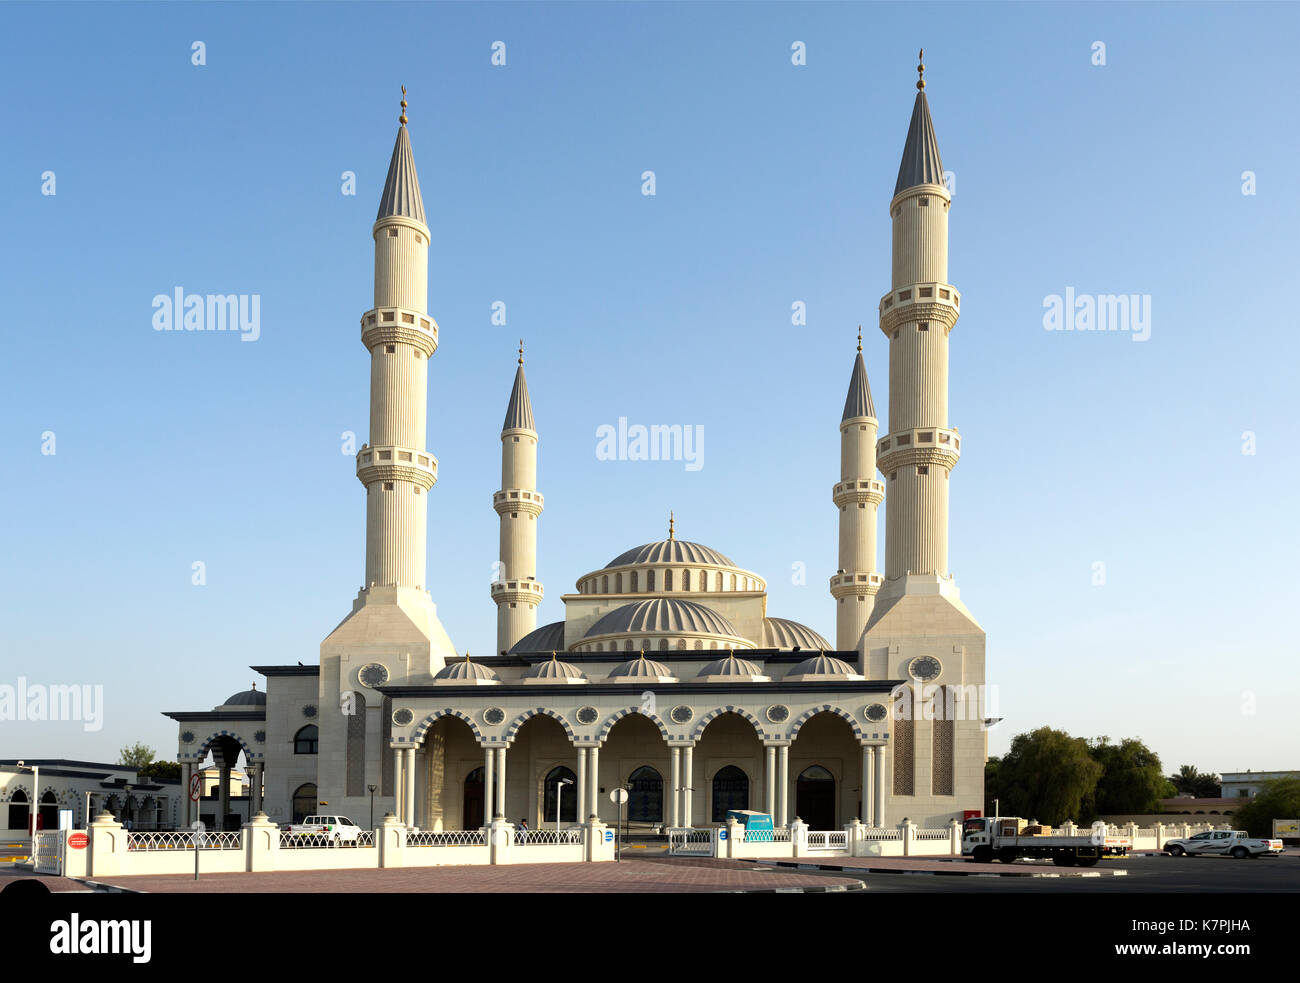 Masjid umar al khattab